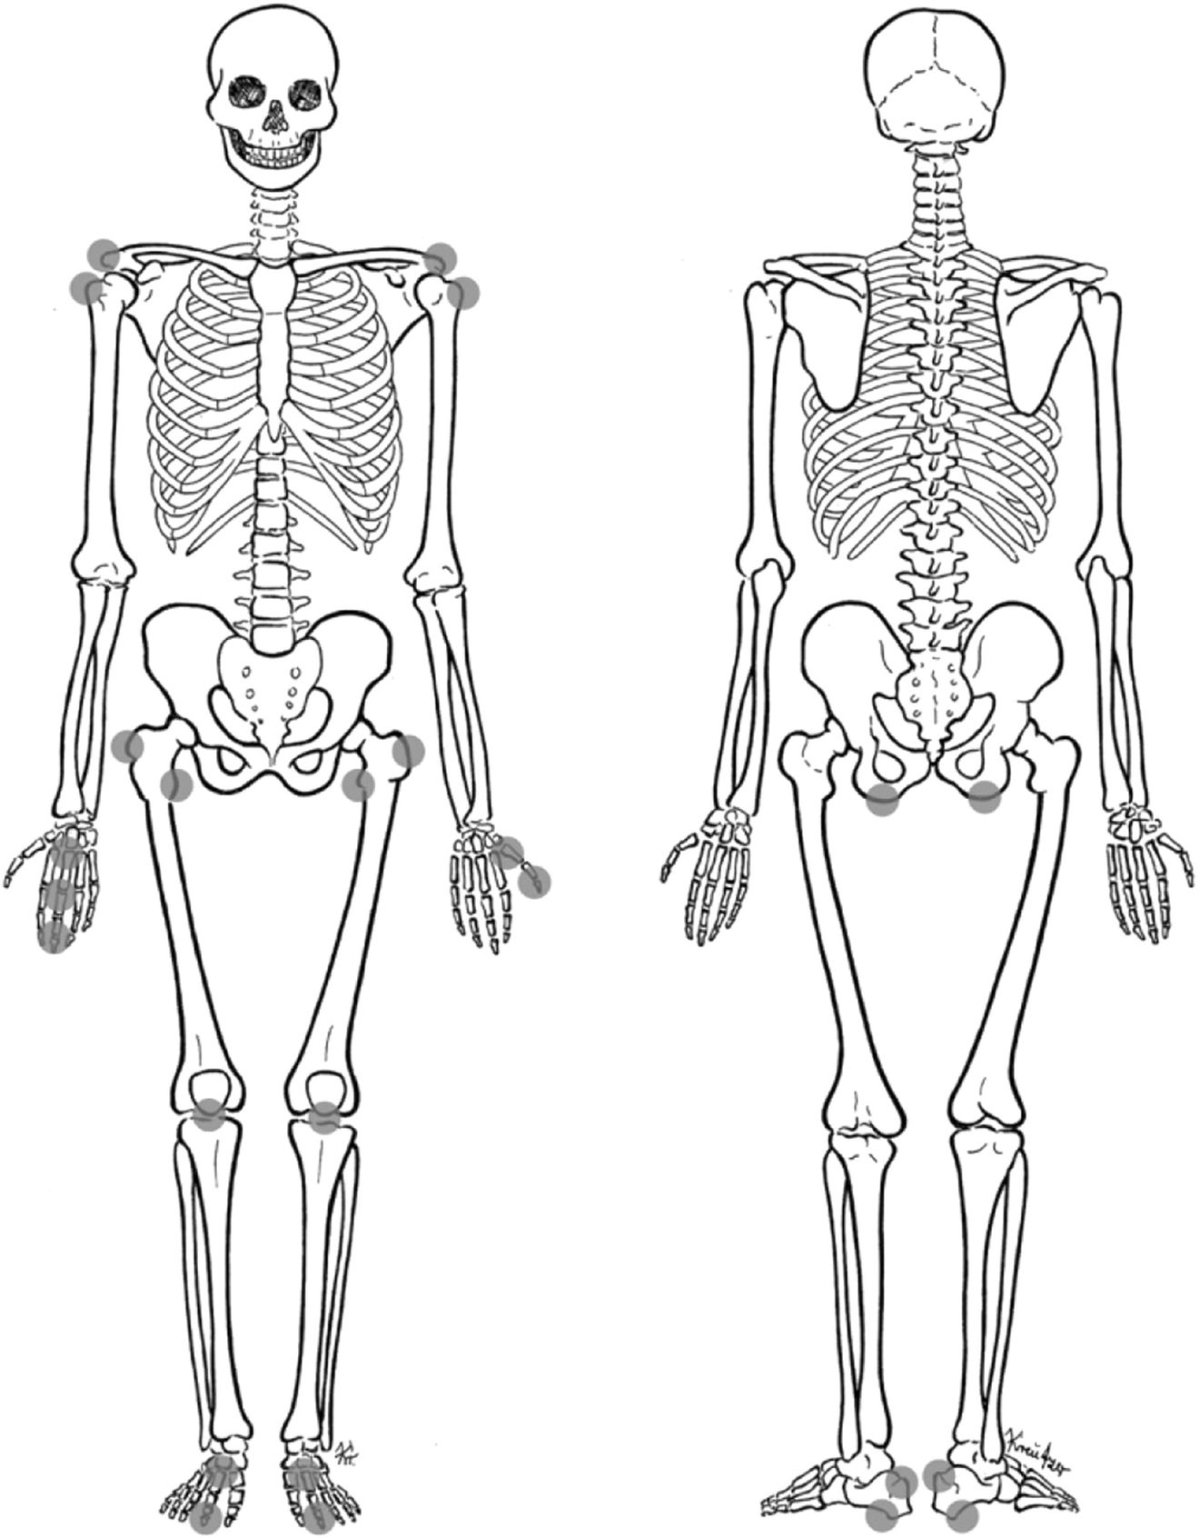 Скелет человека сзади без подписей